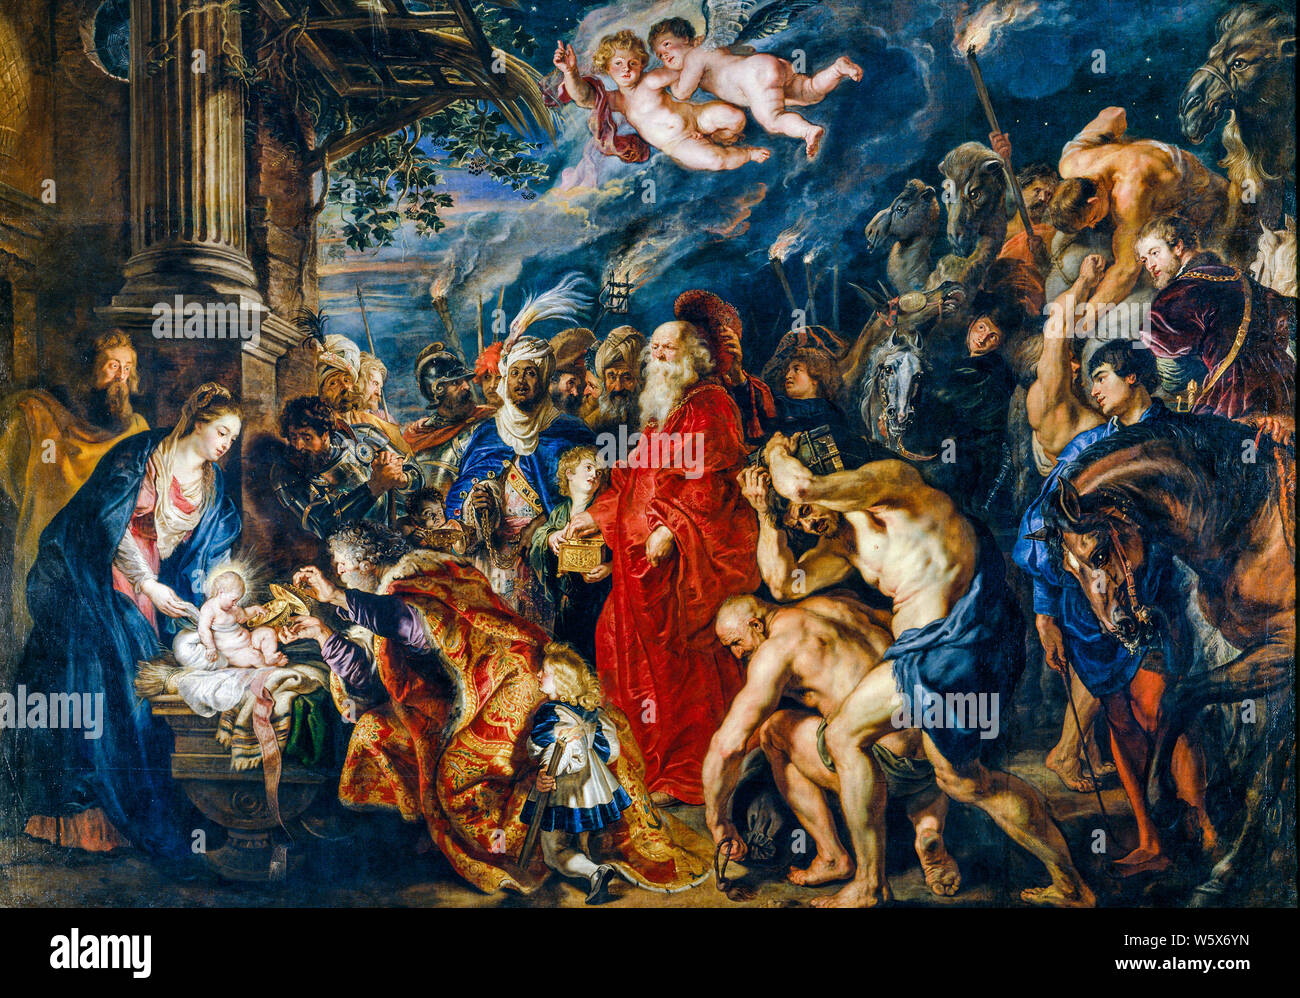 Peter Paul Rubens, la peinture, l'Adoration des Mages, 1628-1629 Banque D'Images